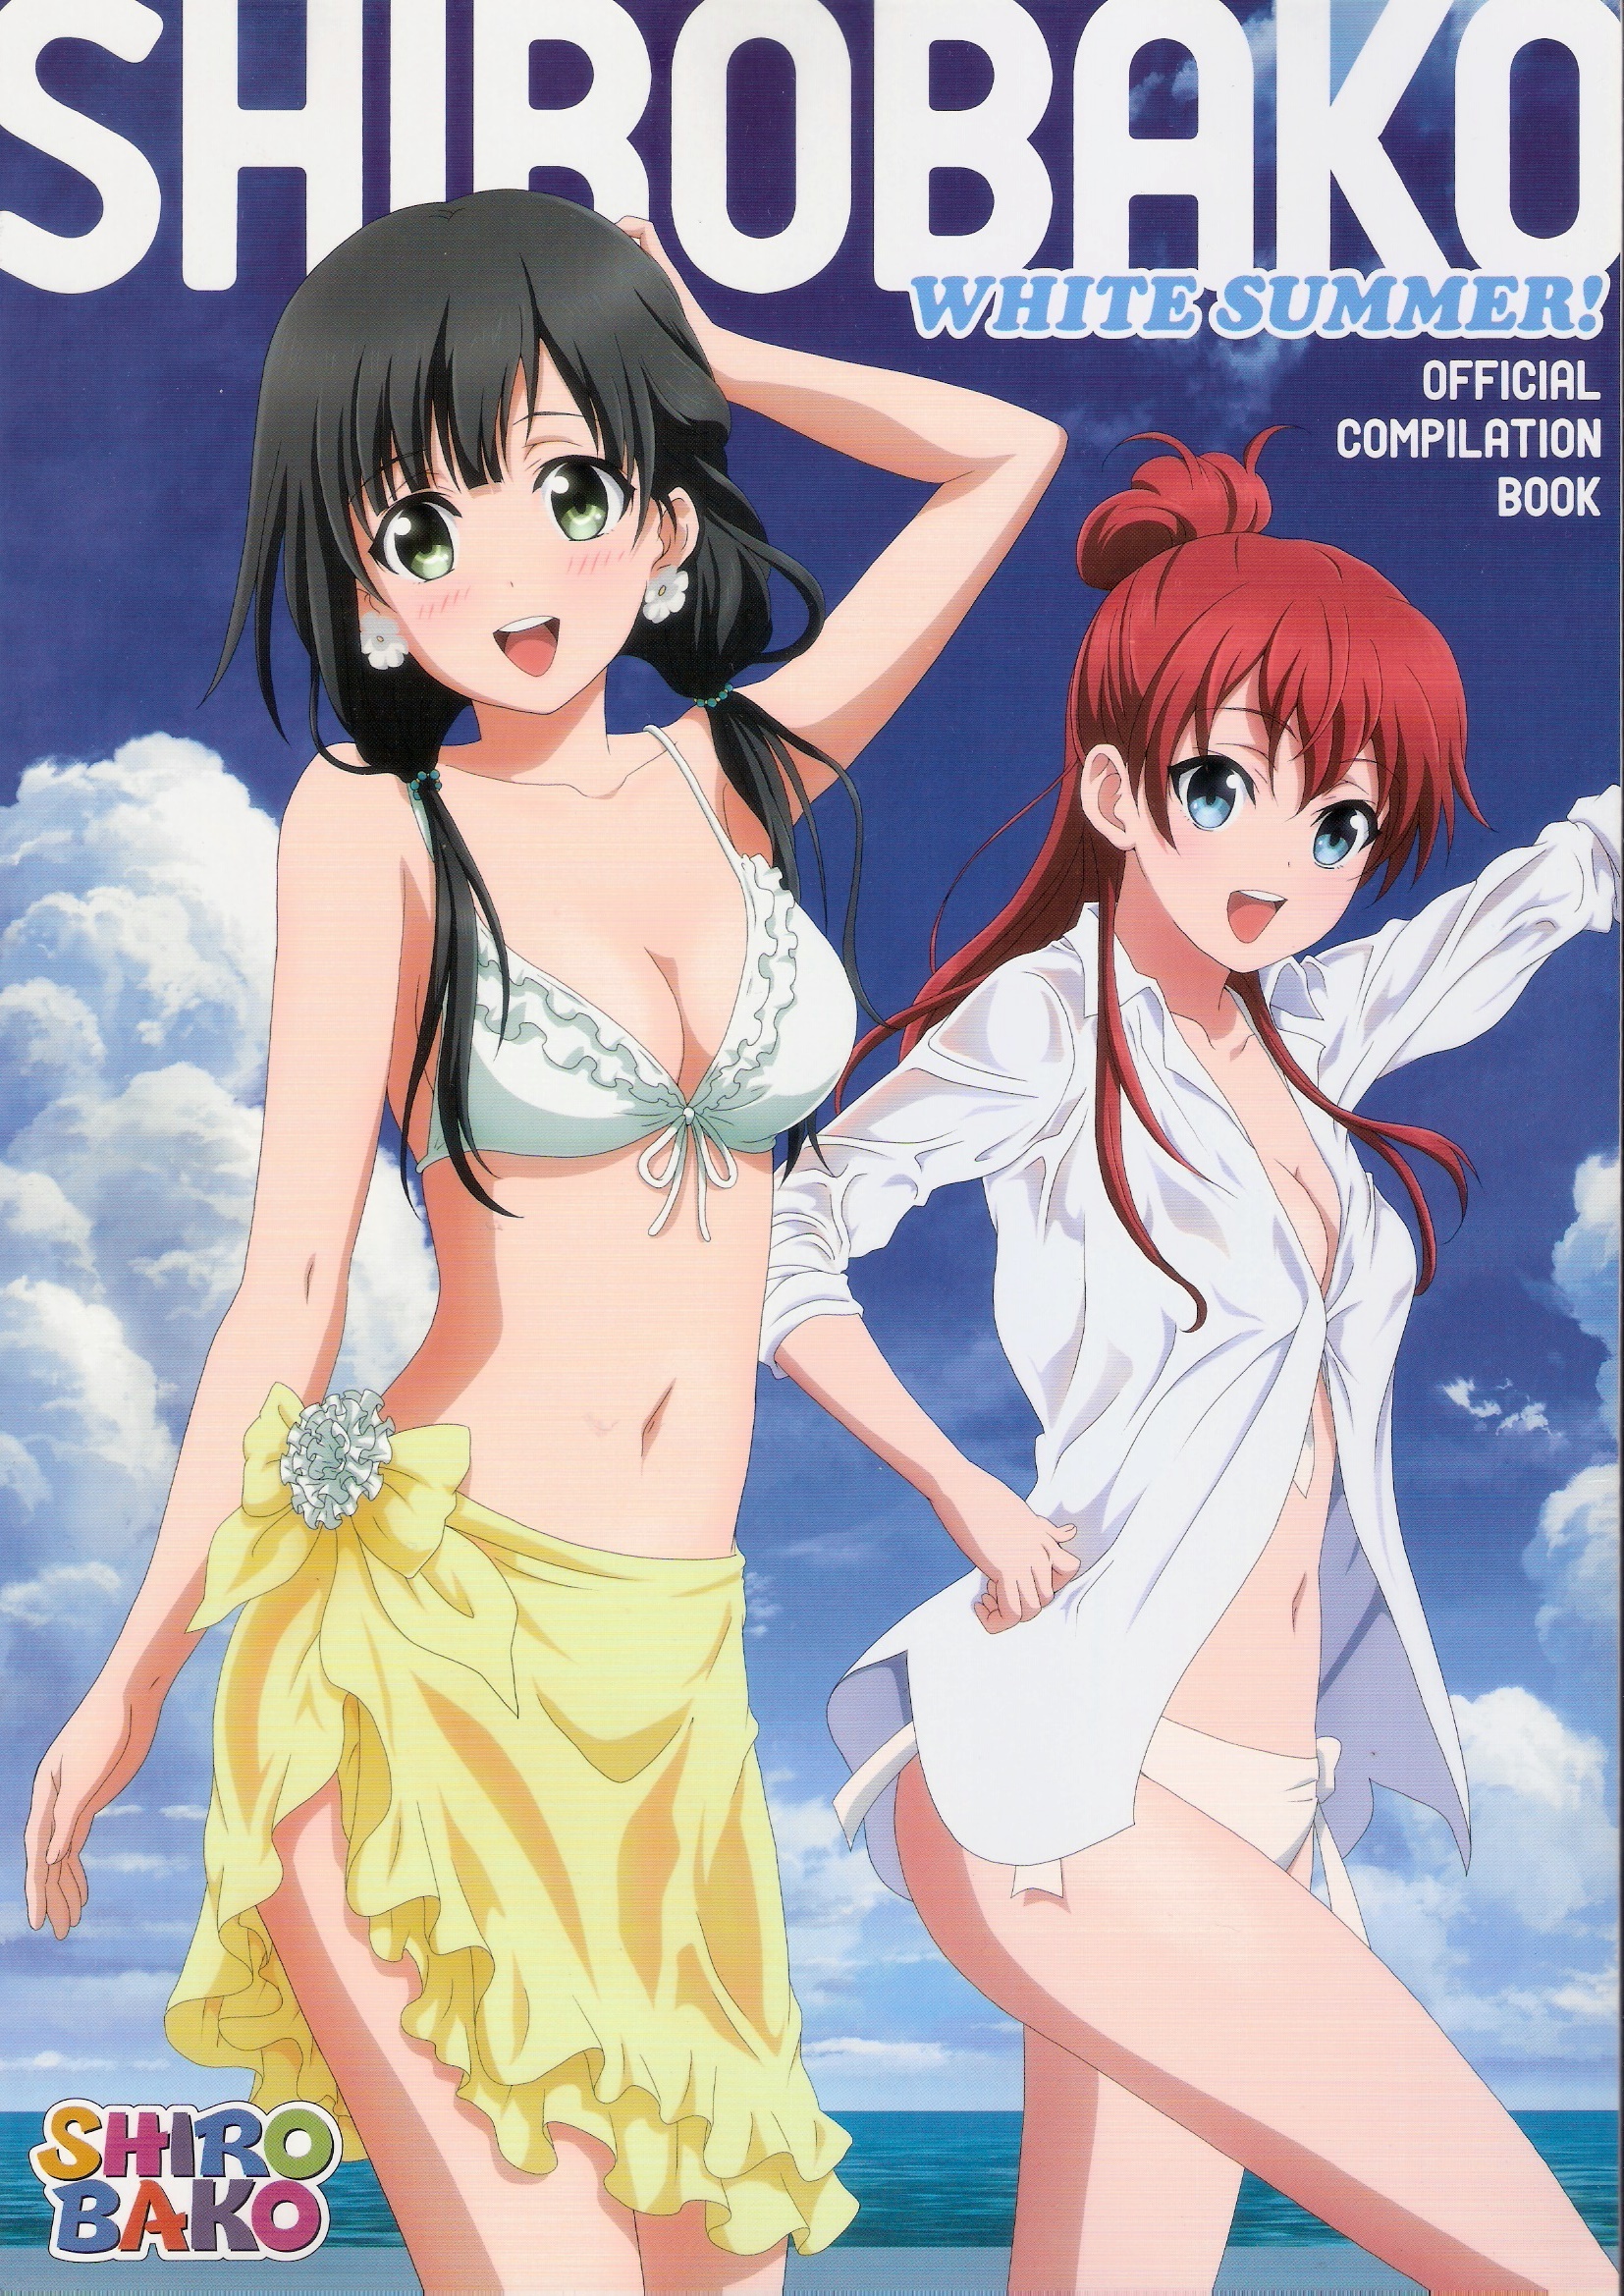 Shirobako White Summer Official Compilation Book